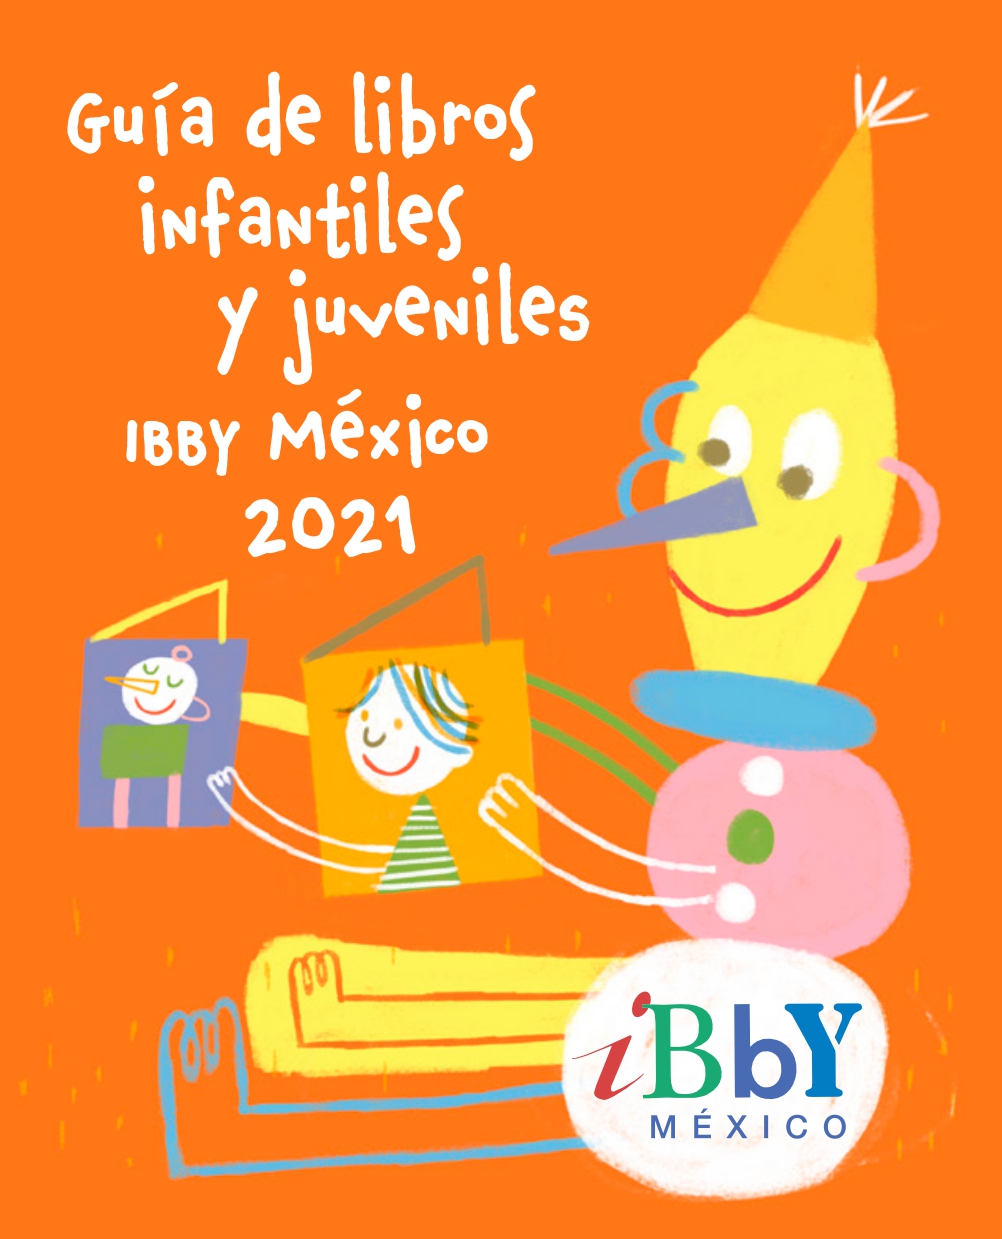 Guía de libros infantiles y juveniles IBBY México 2021